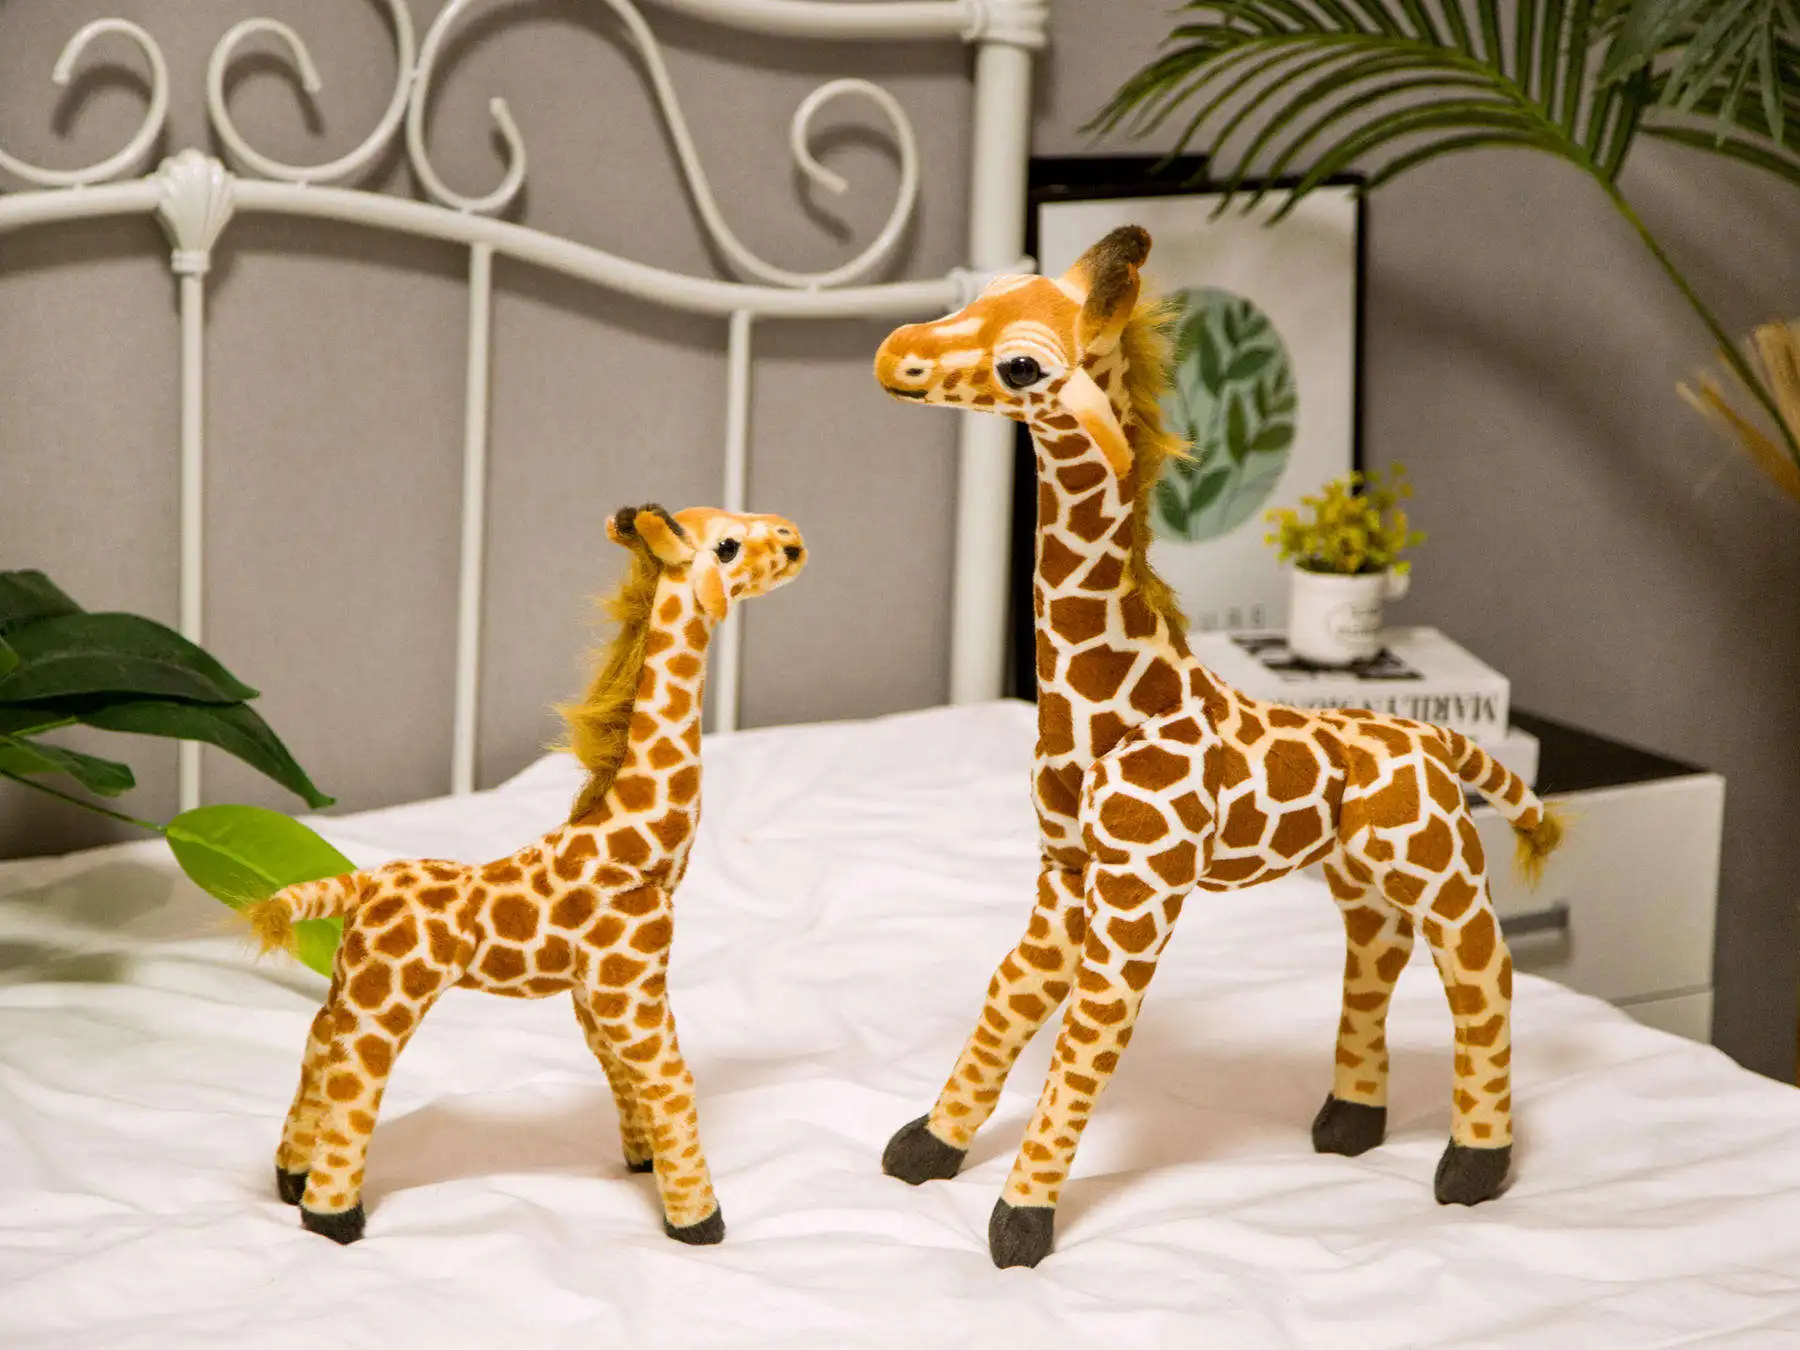 36-55 см милые реальные жираф плюшевые игрушки для детей моделирование олень животное мягкая кукла Дети подарок на день рождения Прекрасный домашний декор